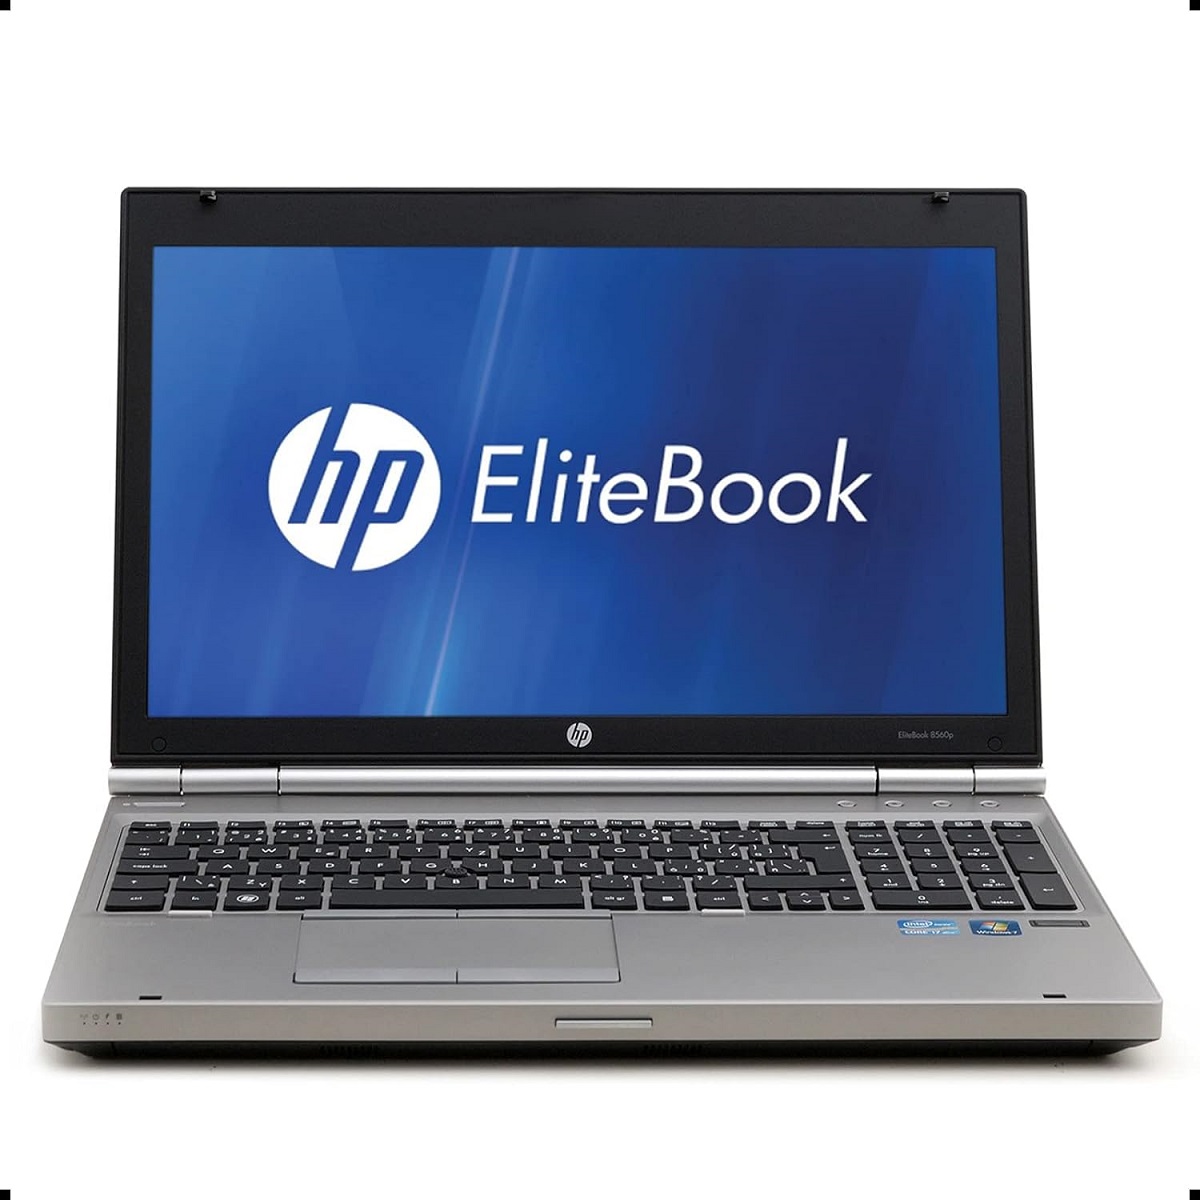 Elitebook 8560p / 15,6" LED / i7 2620M / 8GB / 128GB SSD / WIN 10